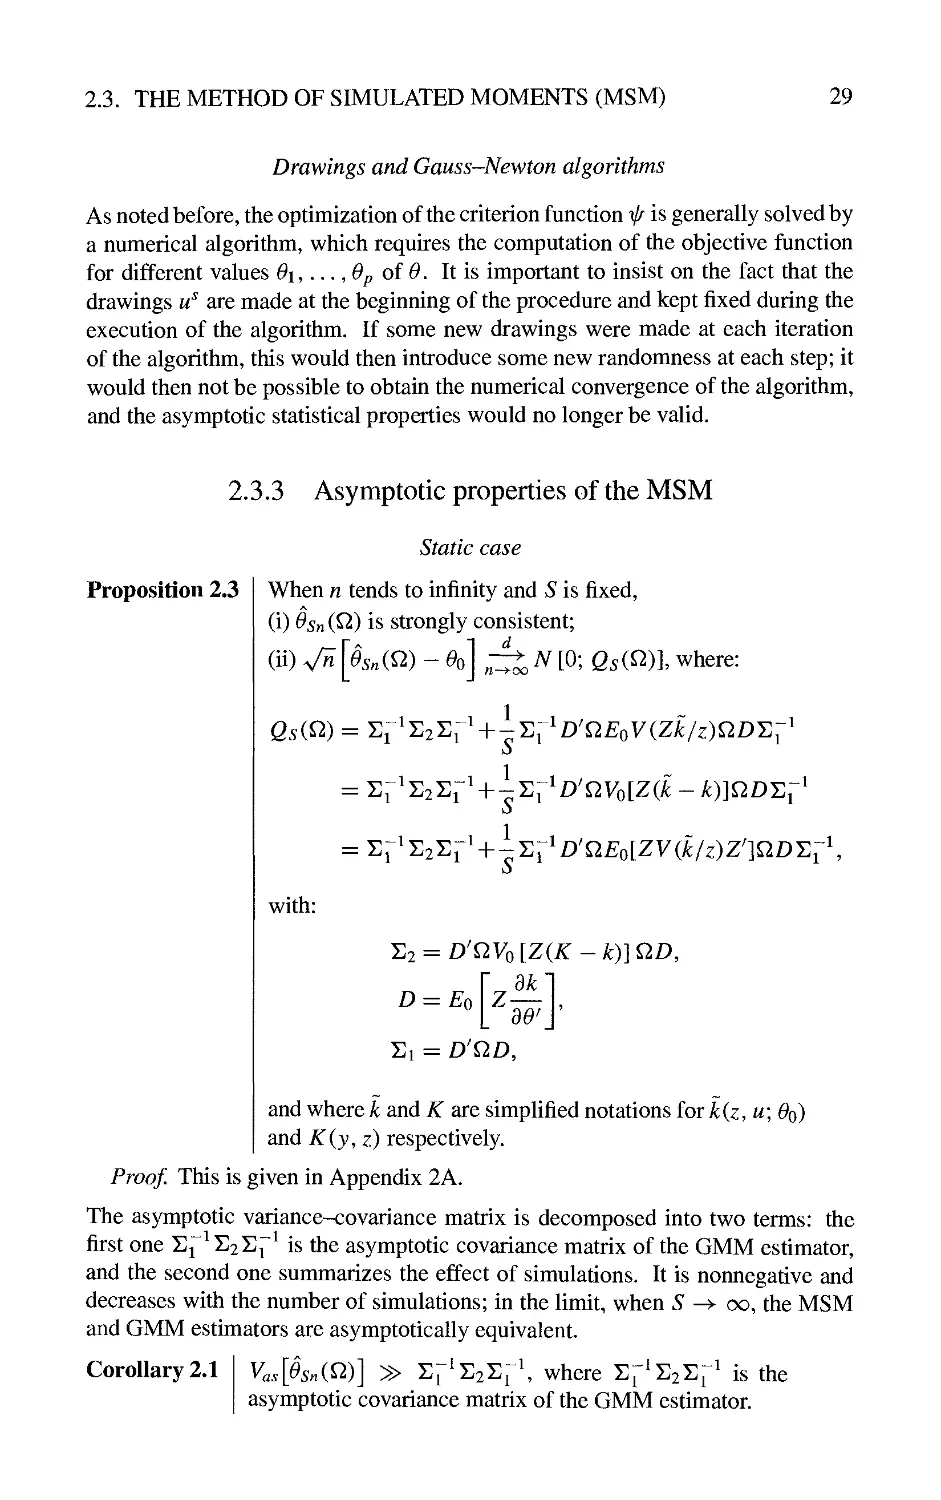 2.3.3 Asymptotic properties of the MSM